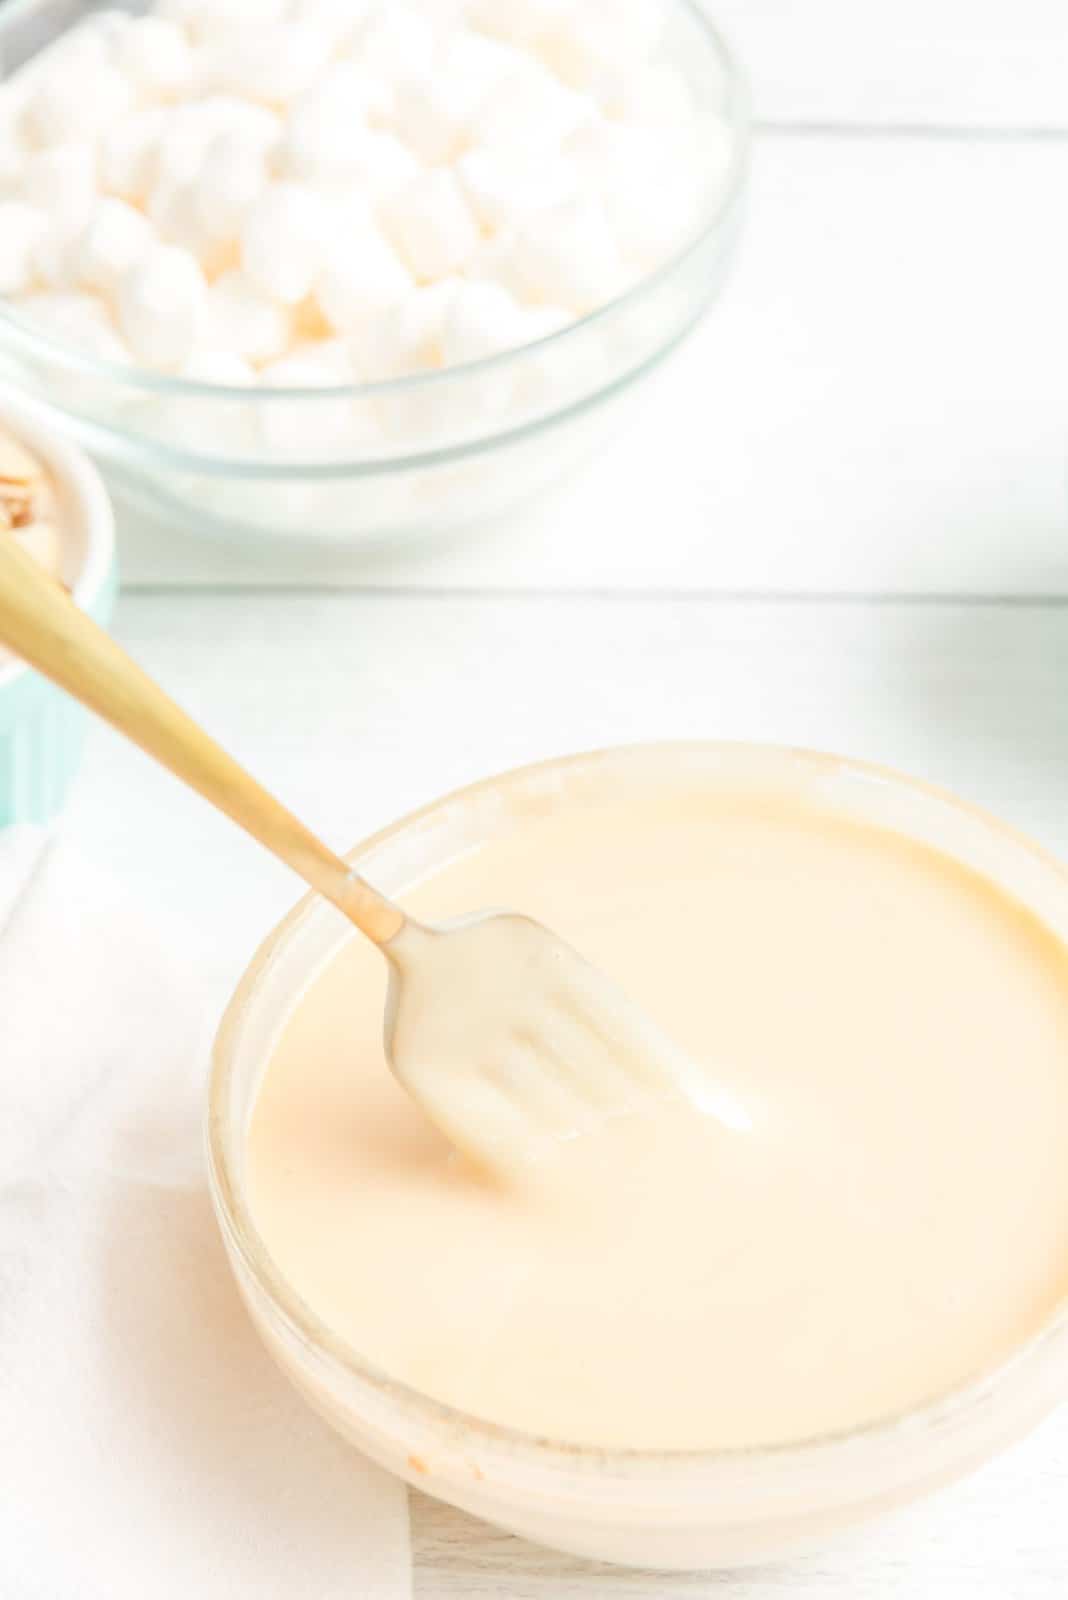 Latte condensato zuccherato e vaniglia mescolati insieme in una ciotola.